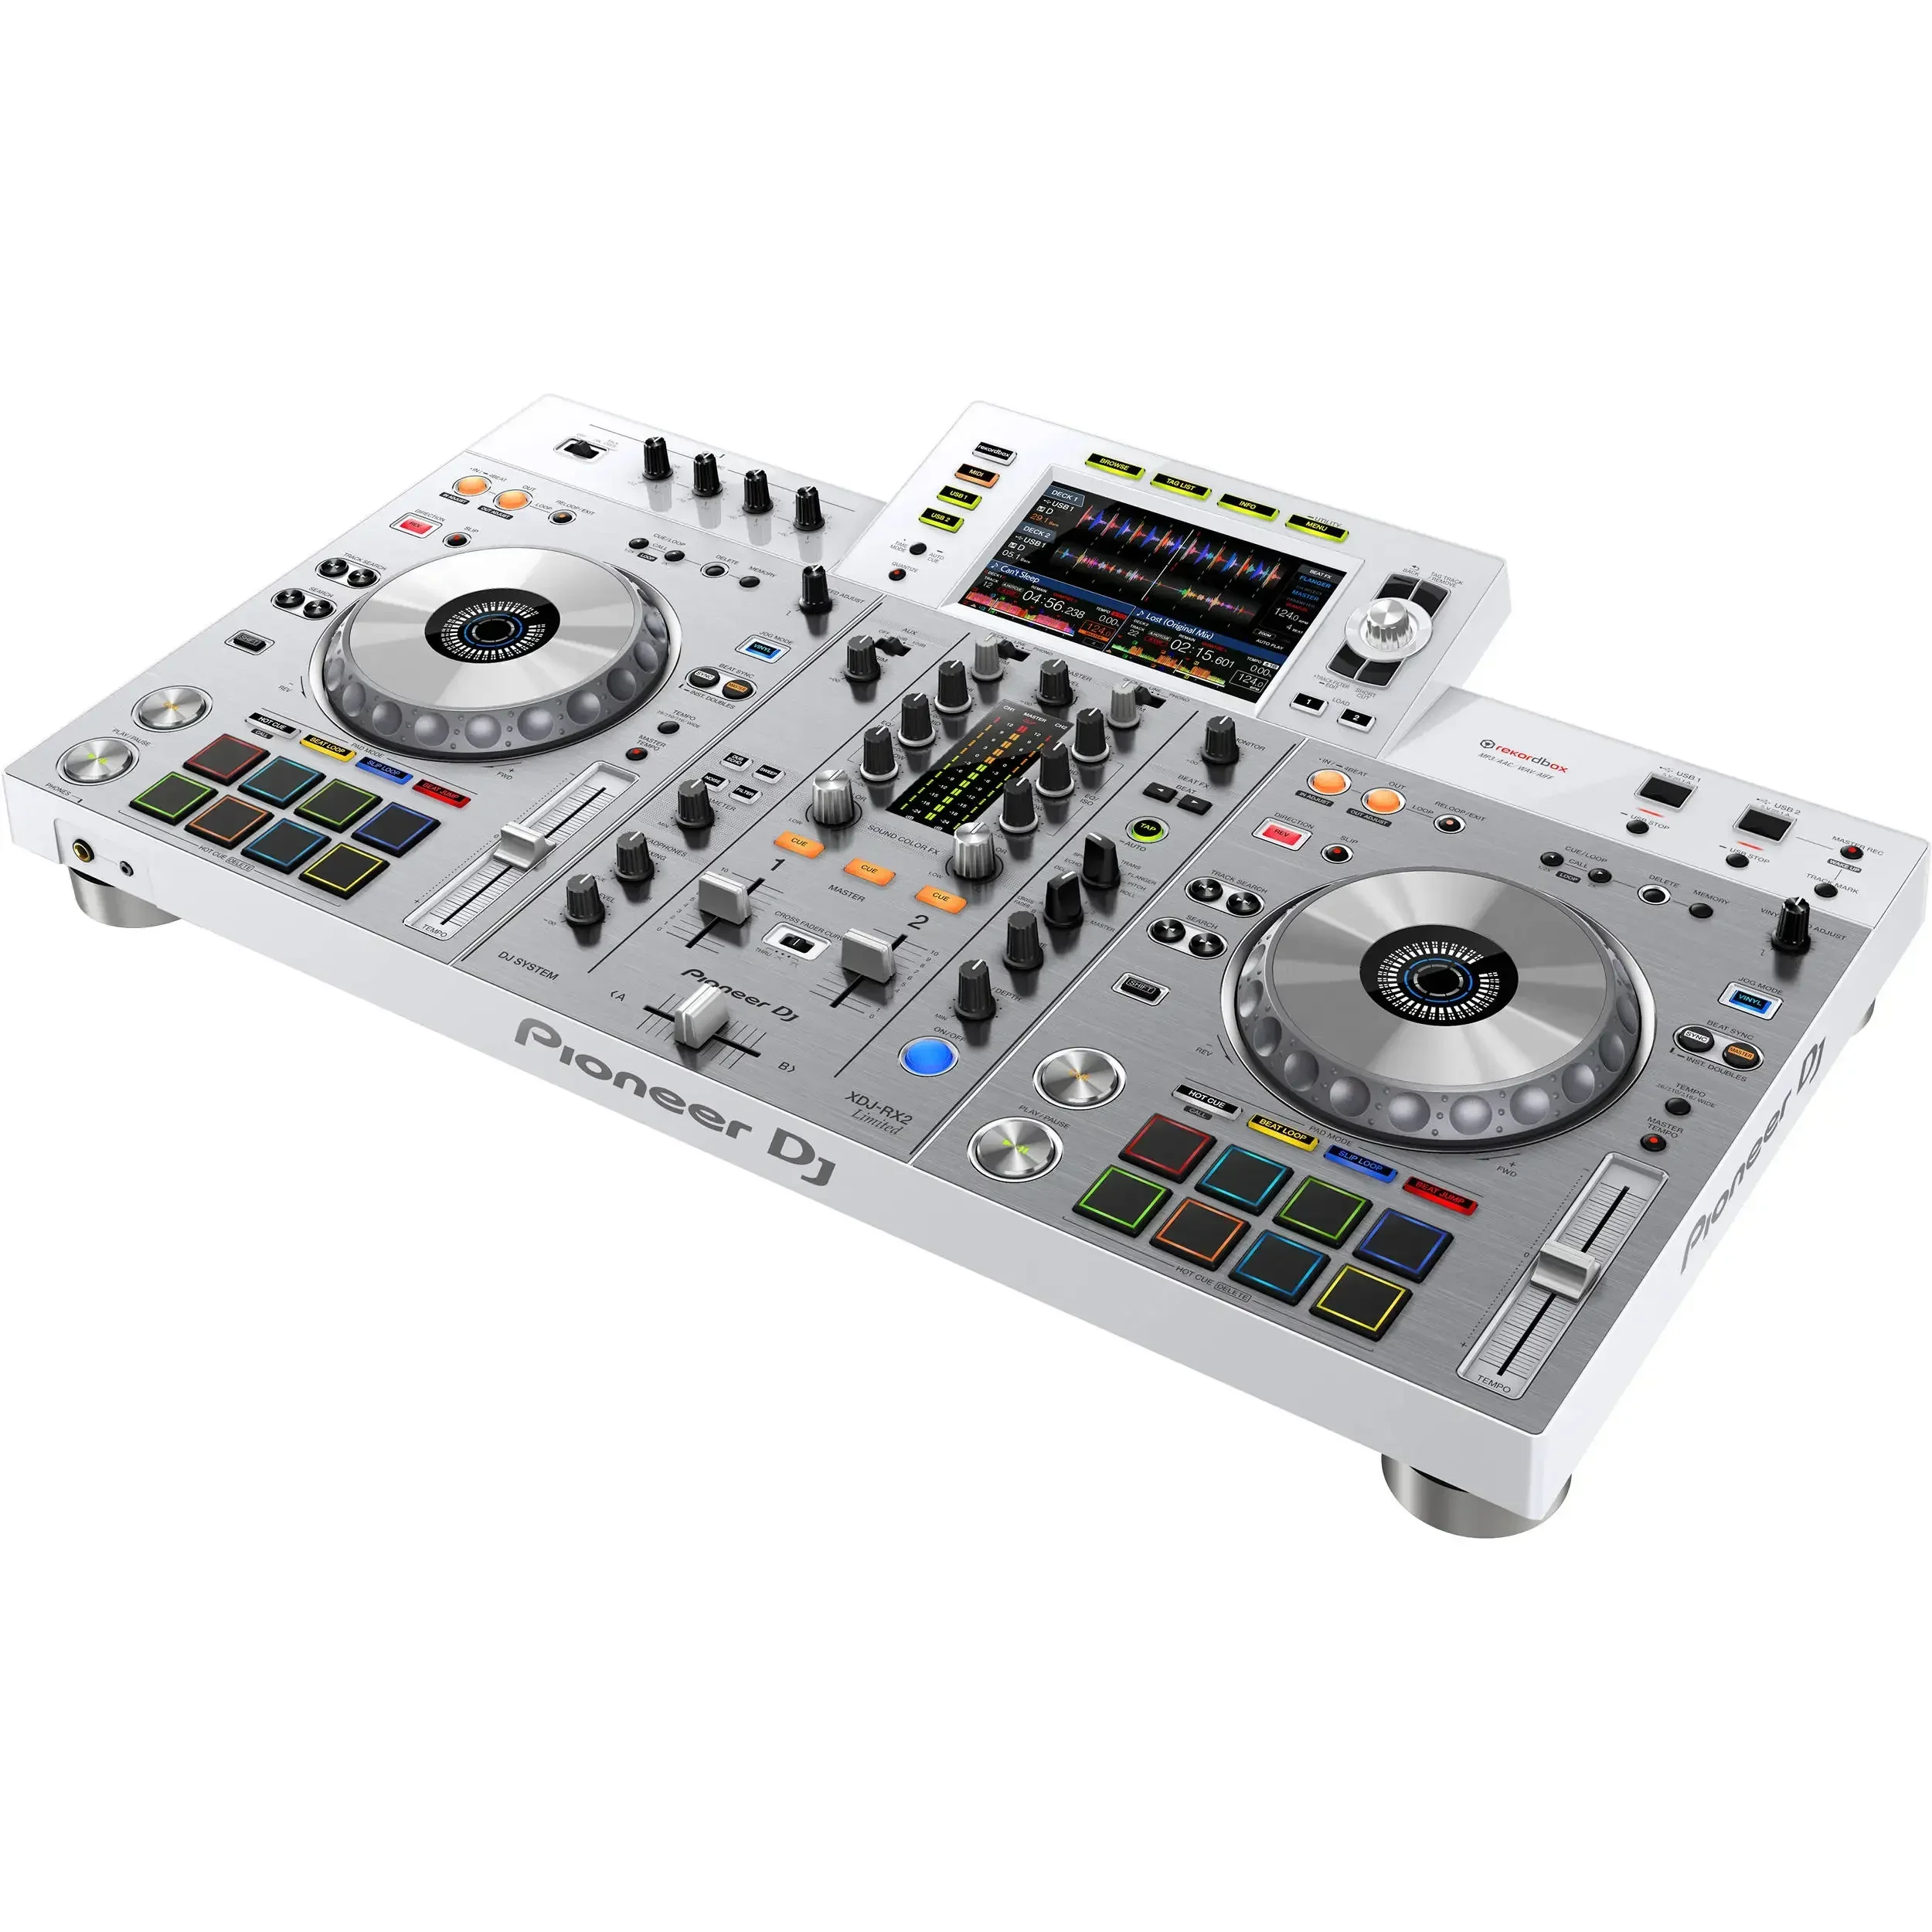 ОТСТЪПКА ЗА ЛЯТНА РАЗПРОДАЖБА НА музикален инструмент Ready For-Pioneer DJ XDJ-RX2-W с вградена система за DJ-миксиране